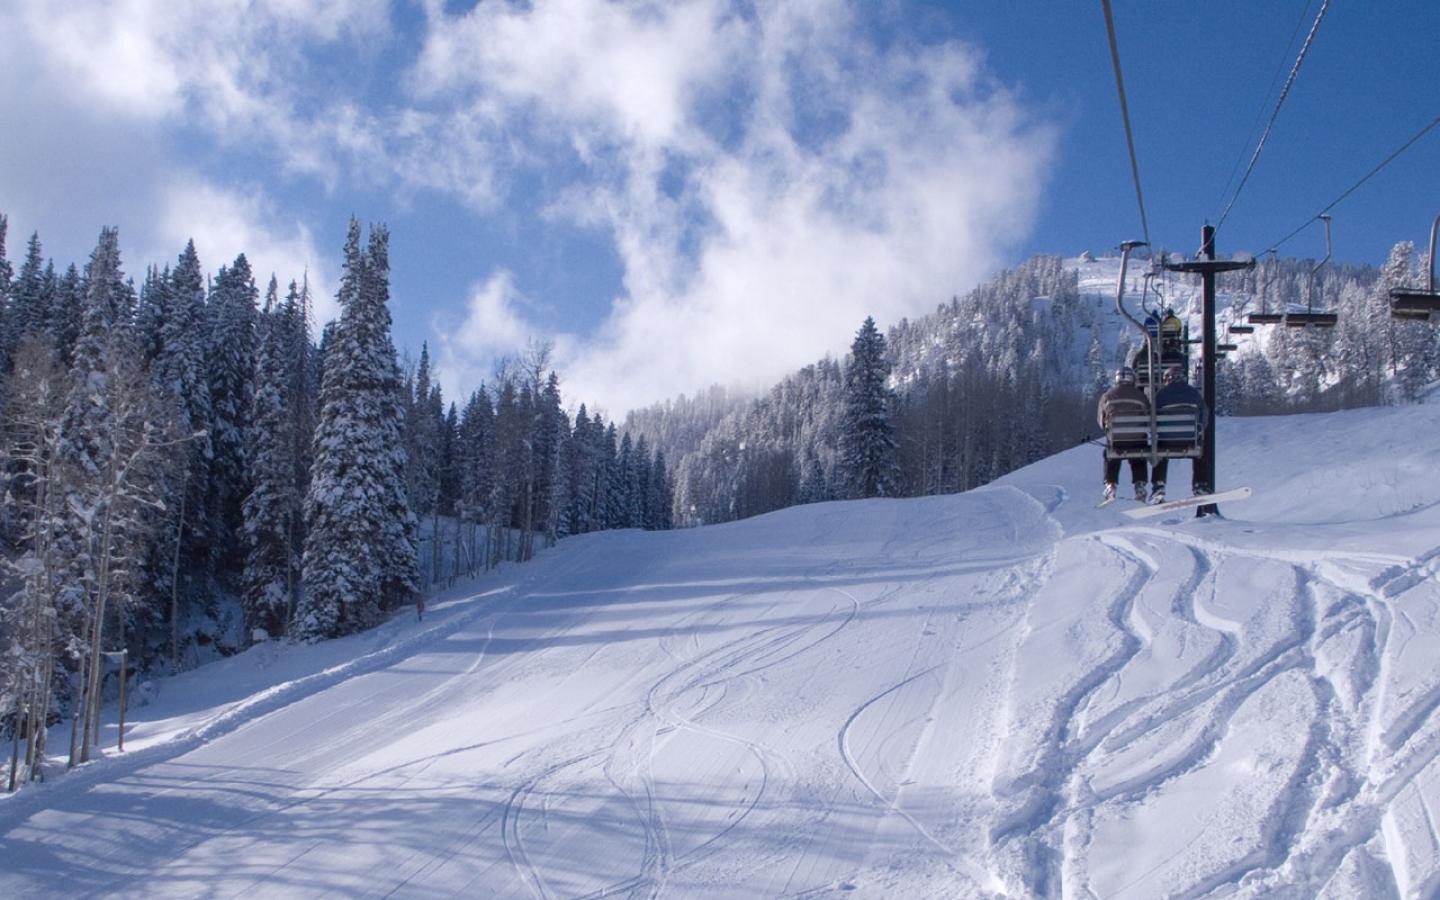 Best ski resort, Utah .100besteverything.com